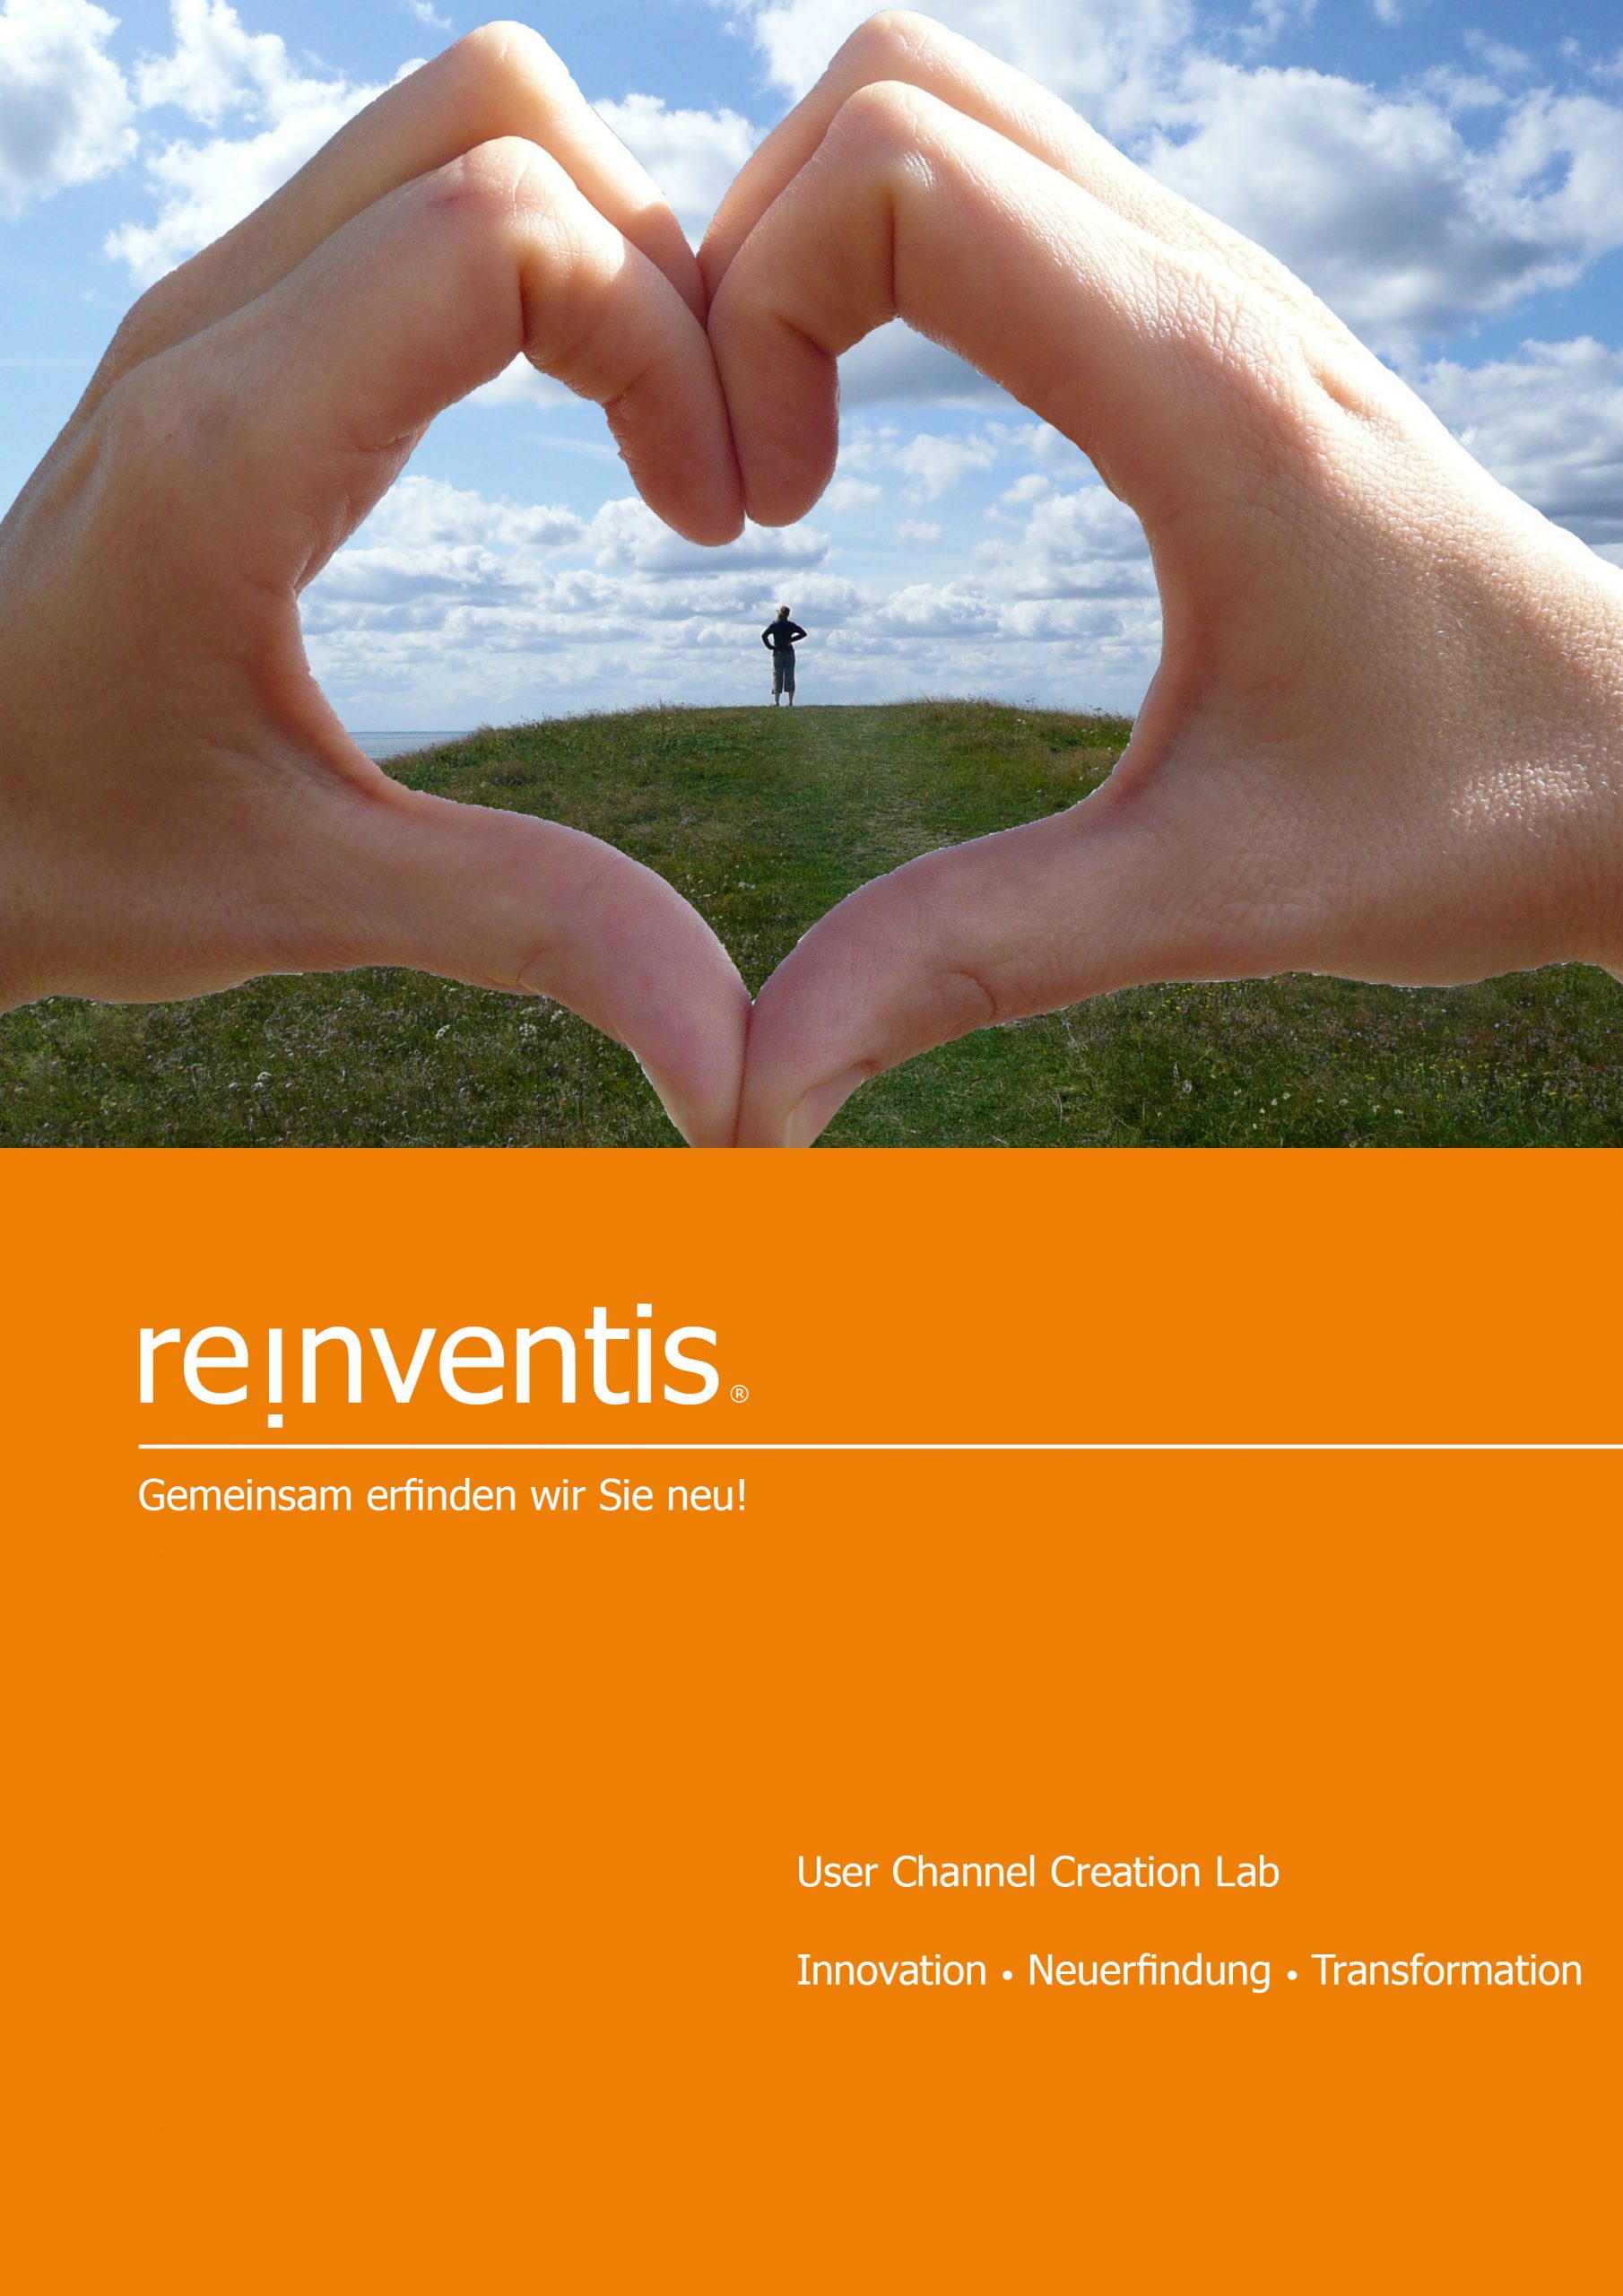 User Channel Lab - Innovation, Reinvention and Transformation - REINVENTIS - Munich